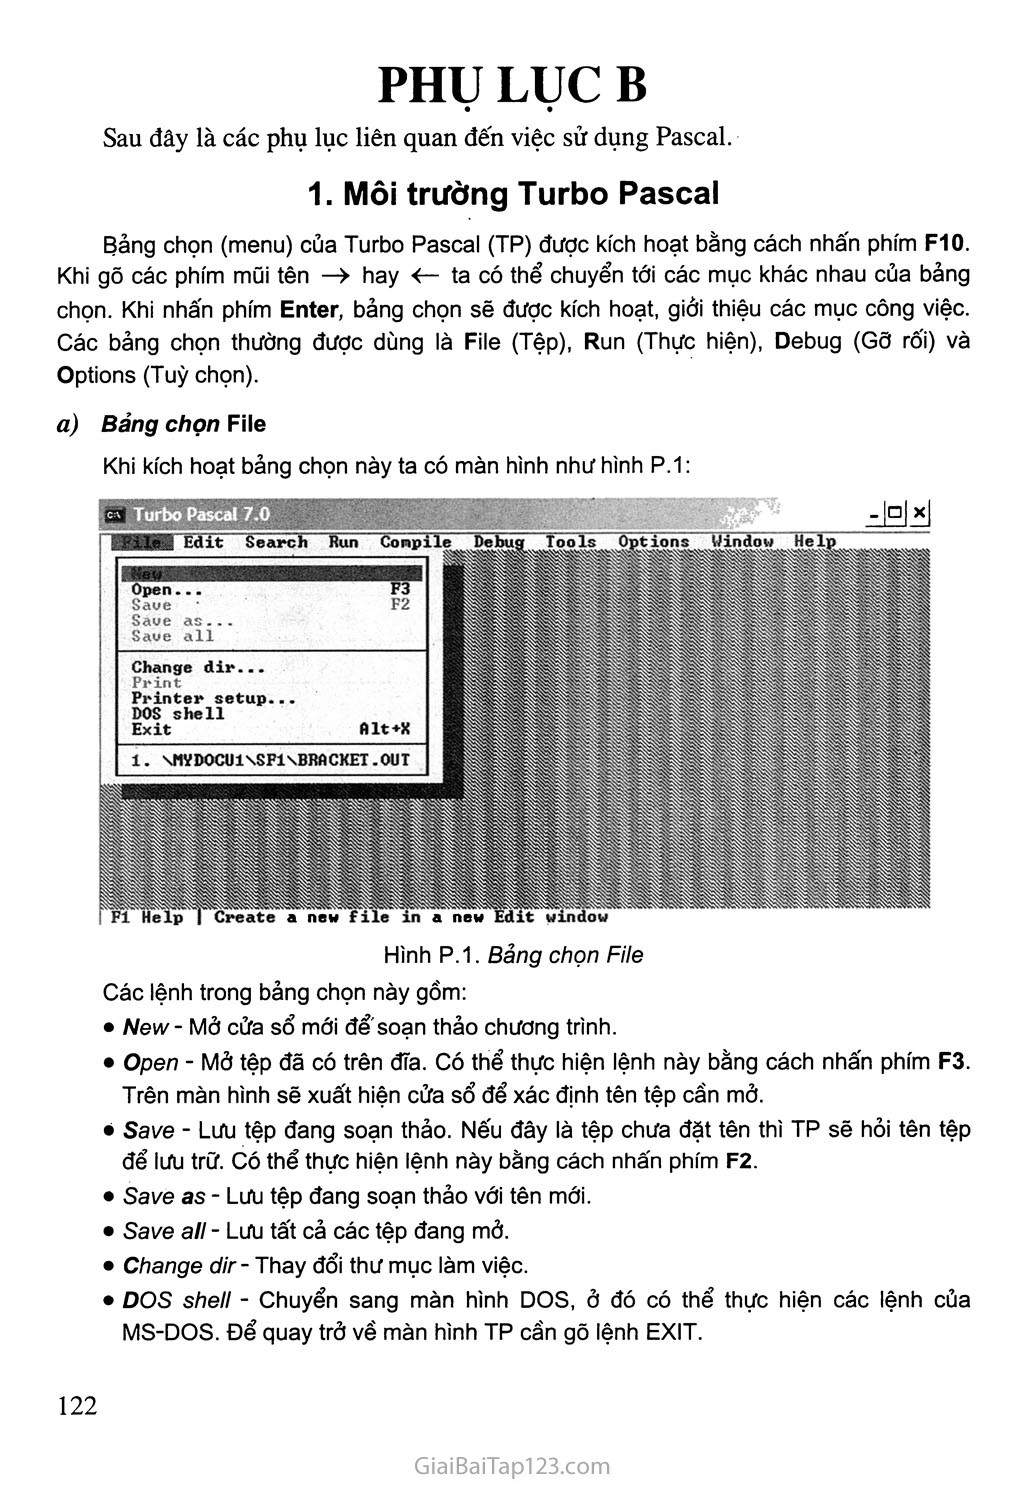 1. Môi trường Turbo Pascal trang 1